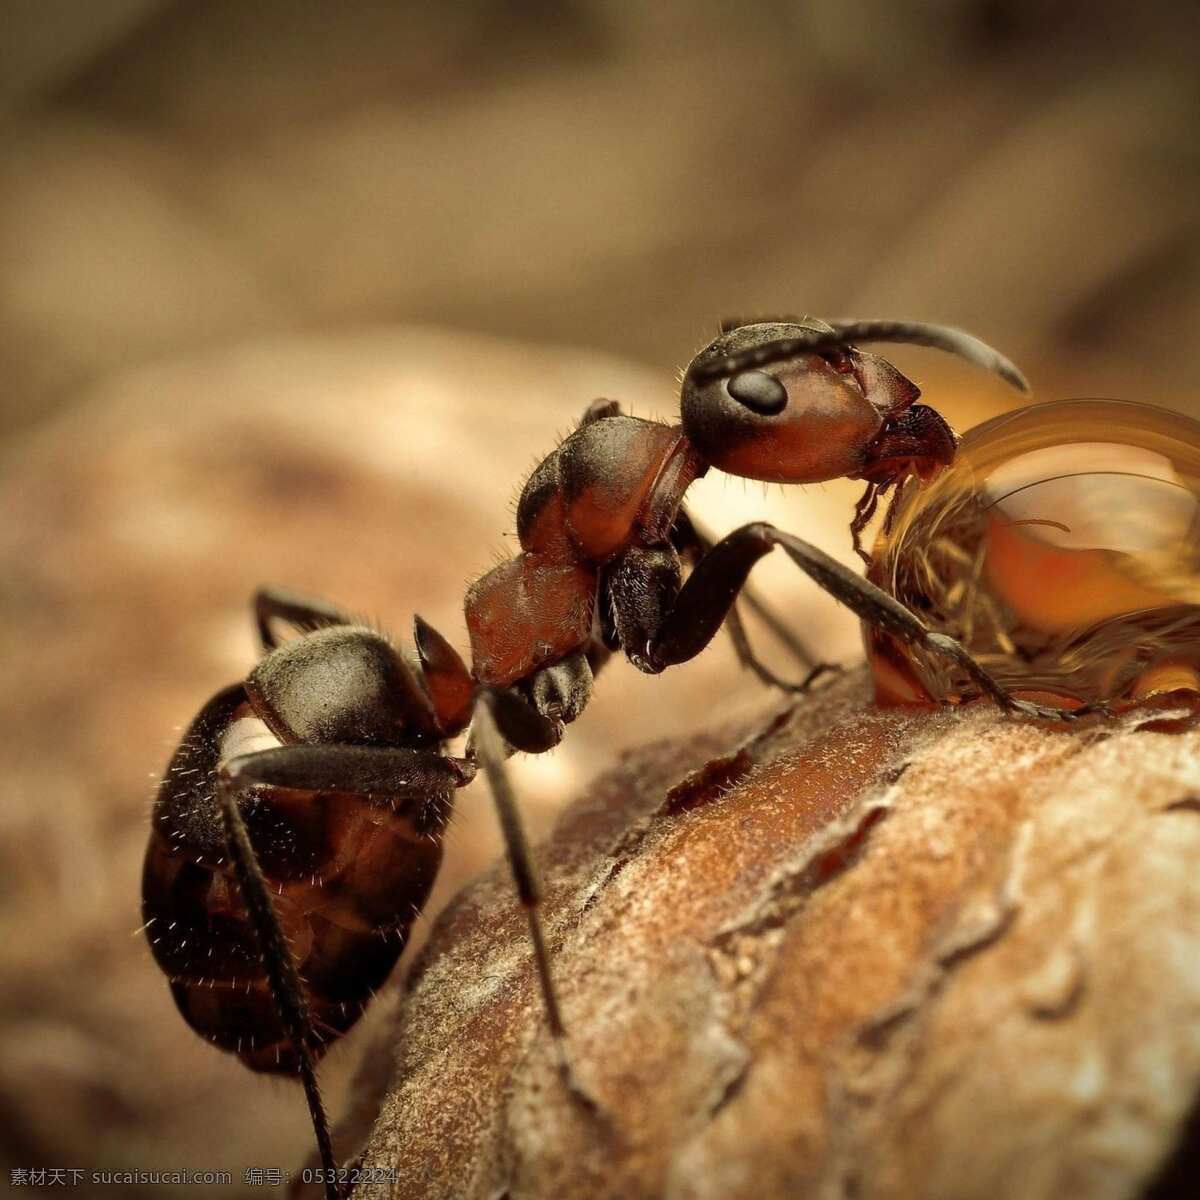 蚂蚁 蚁 ant 昆虫 兵蚁 生物世界 黄色